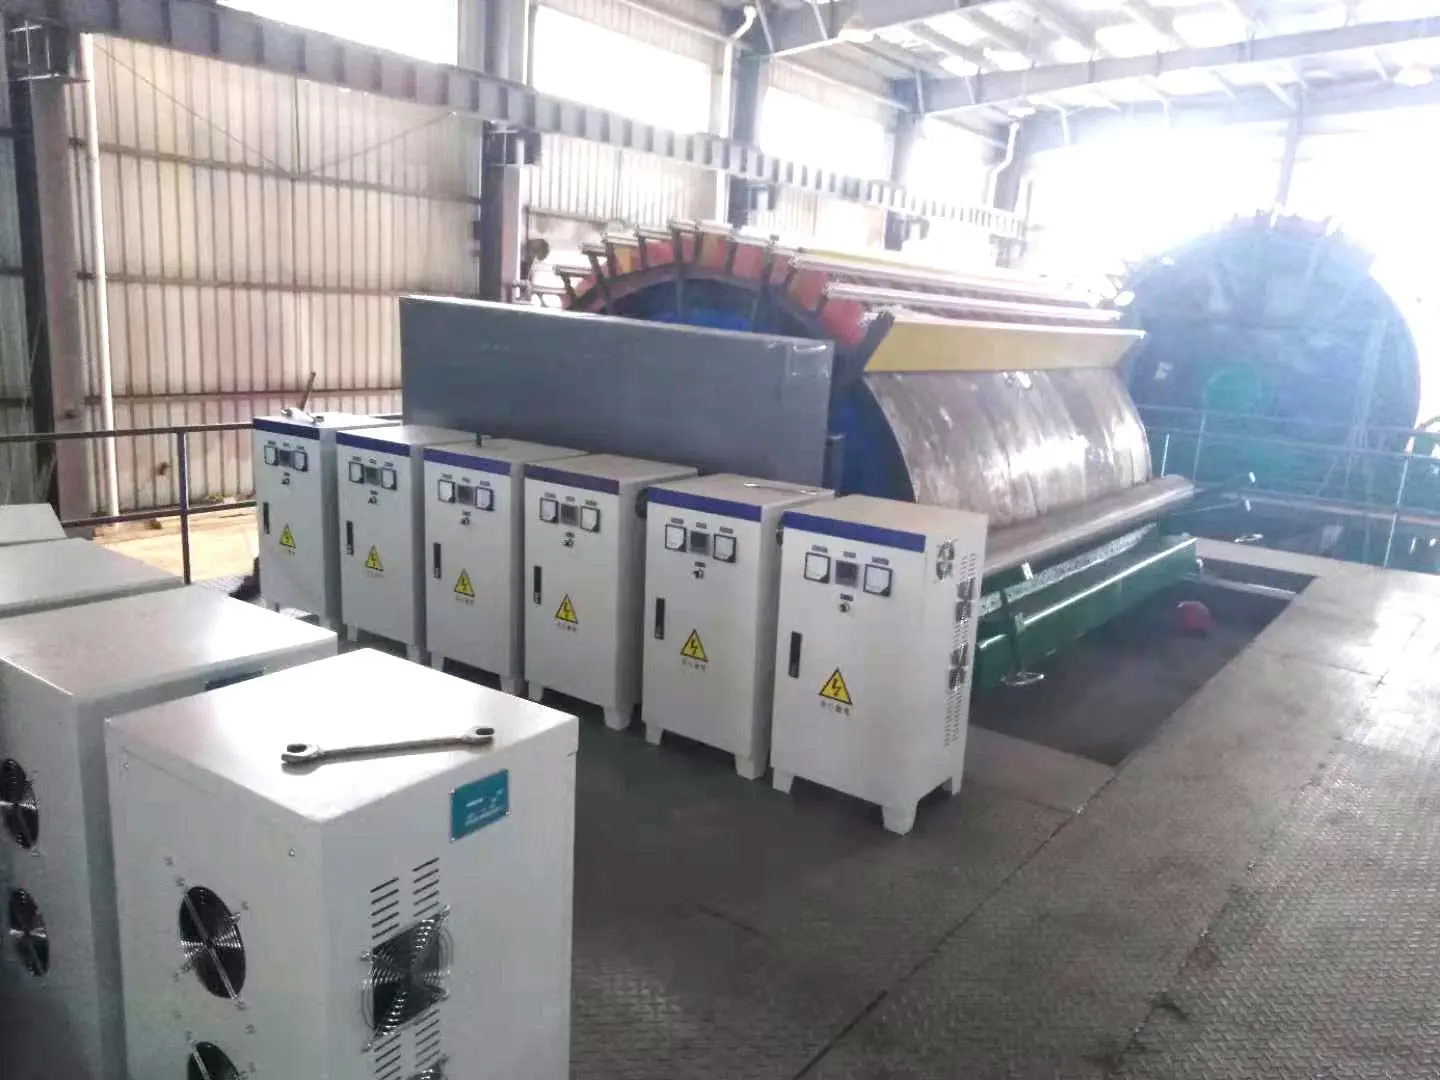 黑豹加速器最新版电磁加热器在青川造纸厂上的应用